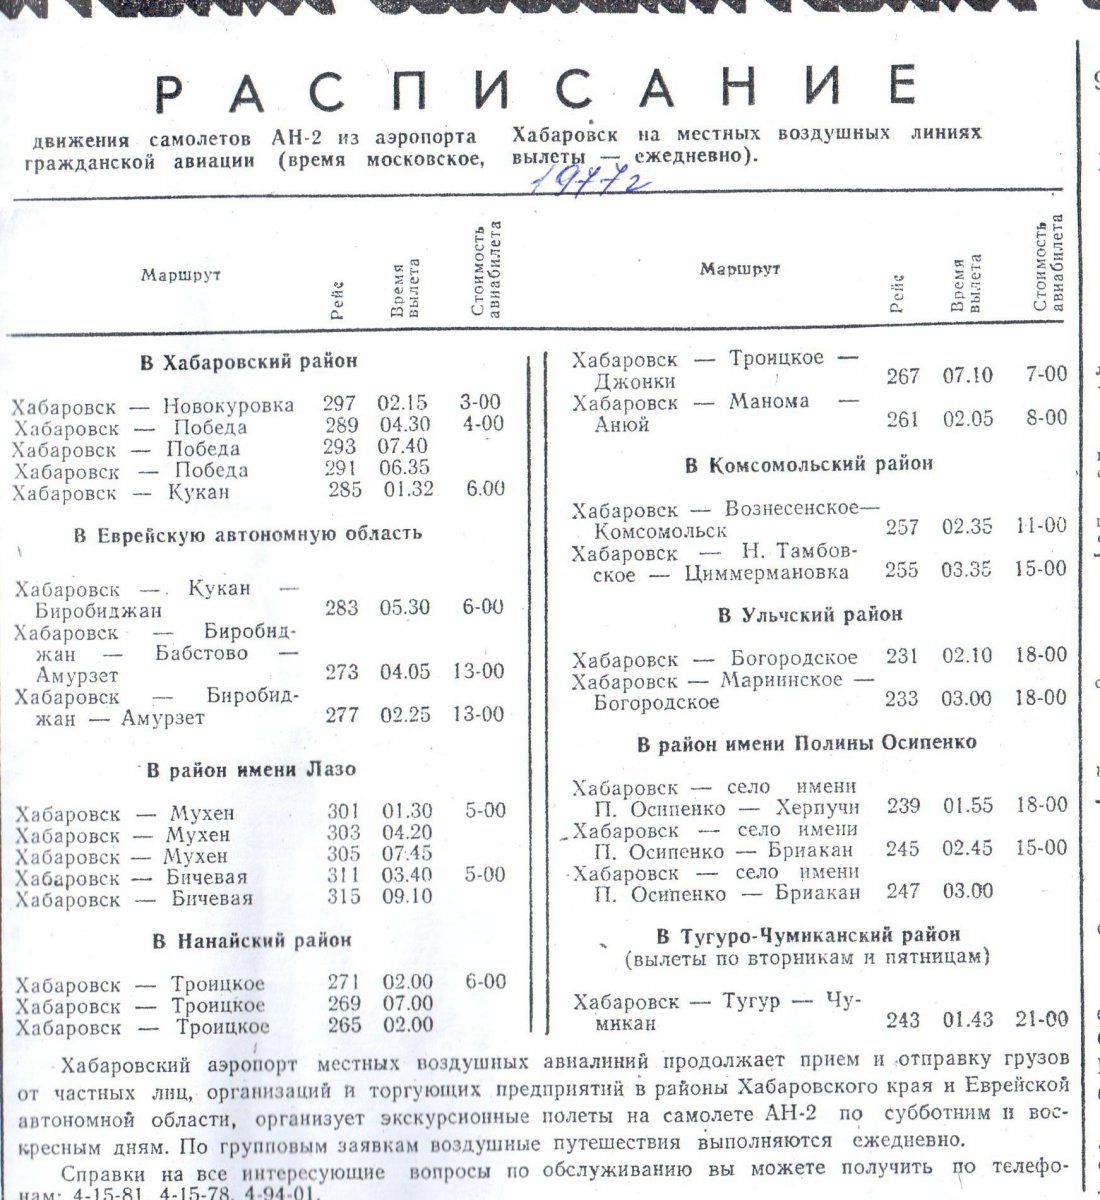 Хабаровск богородское авиабилеты цена расписание самолетов красноярск иркутск цена билета